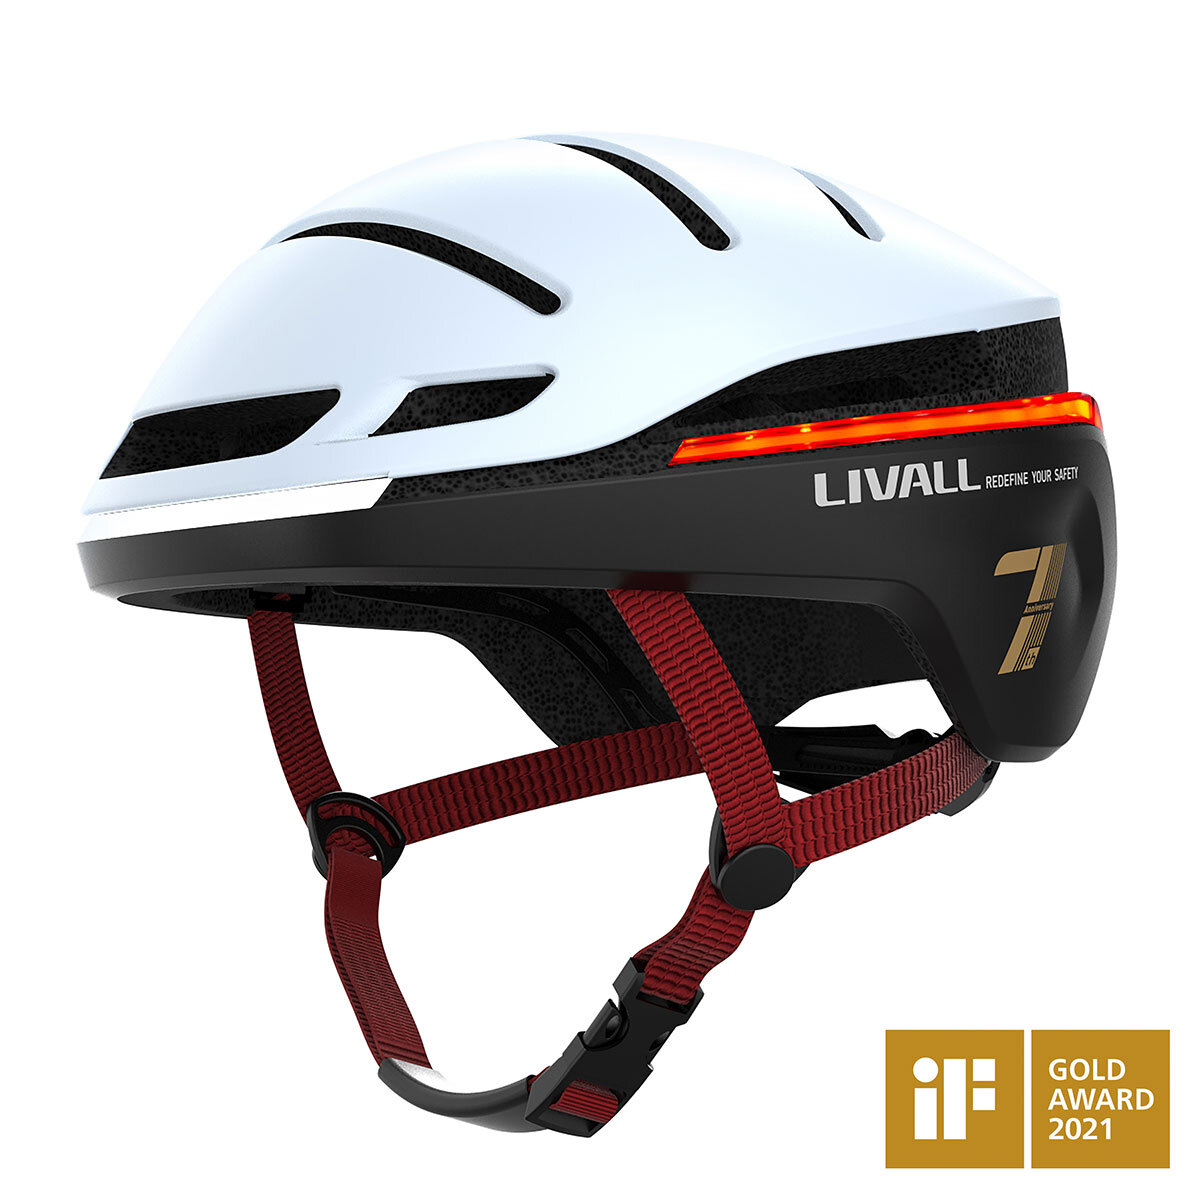 lead image for livall helmet in snow white